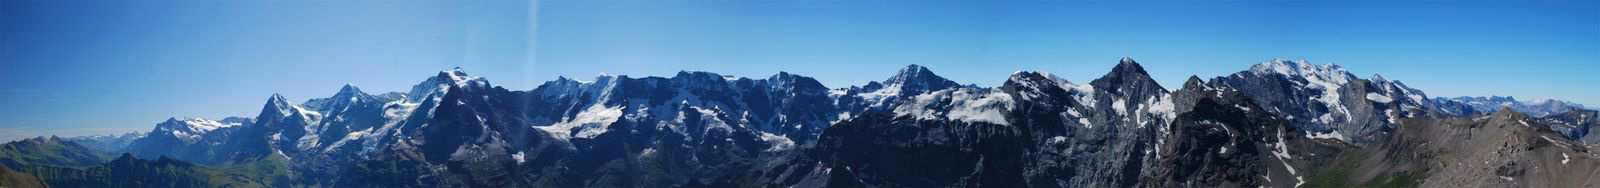 Jungfraumassiv Schweiz